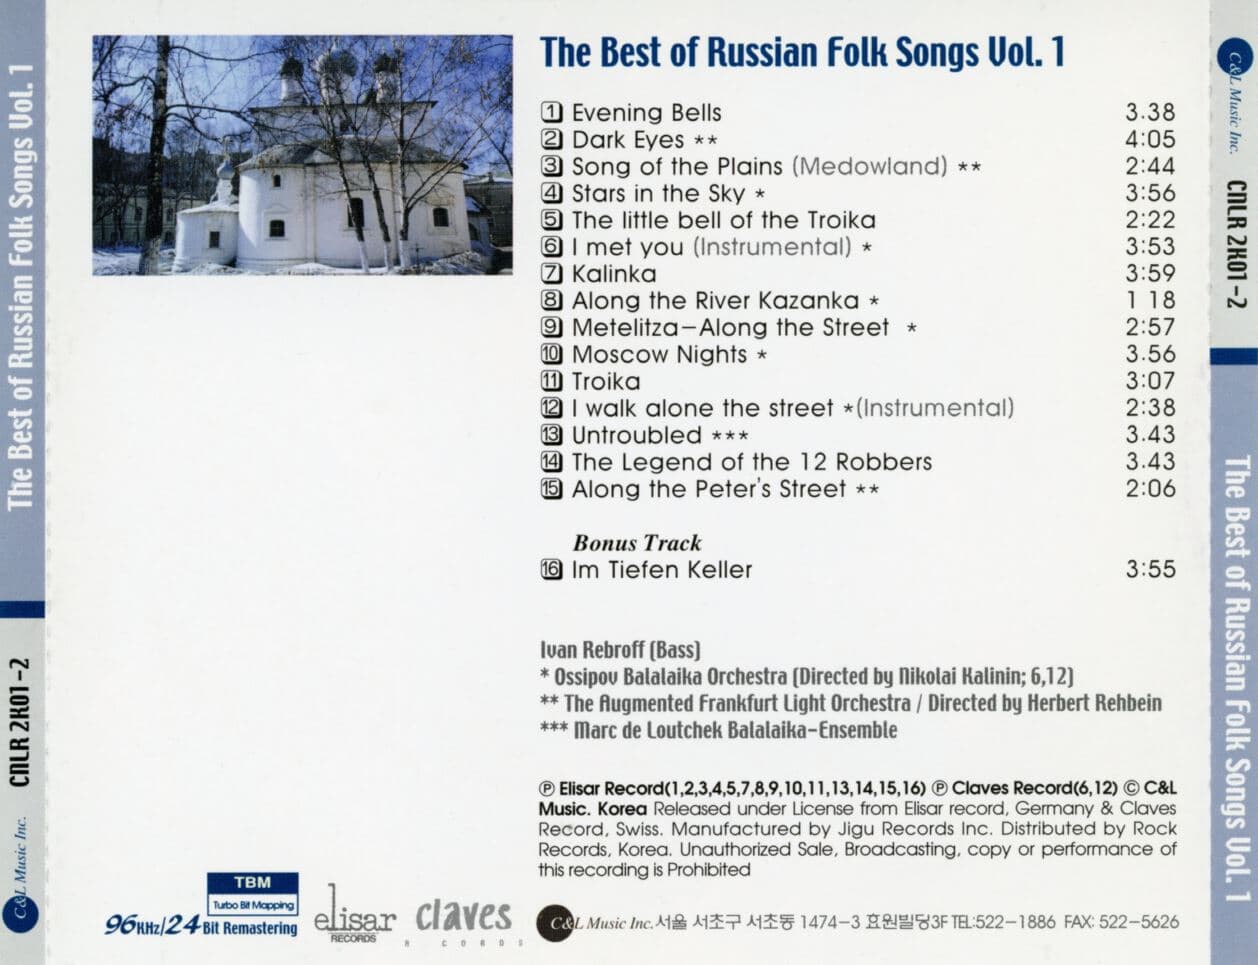 베스트 오브 러시안 포크송 Vol.1 - The Best Of Russian Folk Song Vol.1 [96/24 Remastering]